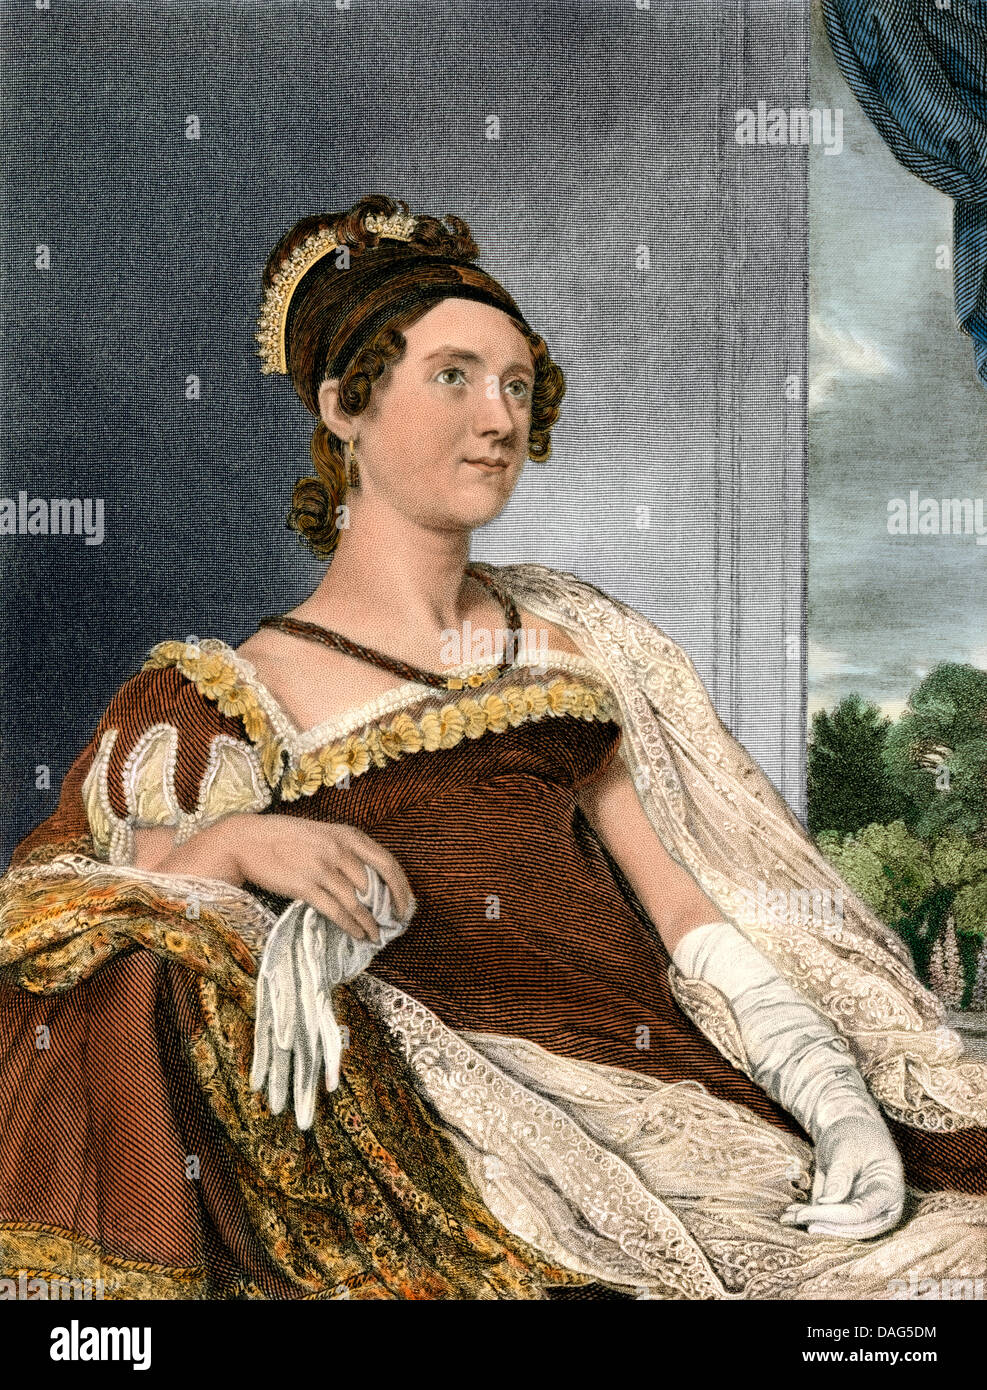 Portrait de la Première Dame Louisa Catherine Adams, épouse de John Quincy Adams, début des années 1800. Gravure couleur numérique Banque D'Images